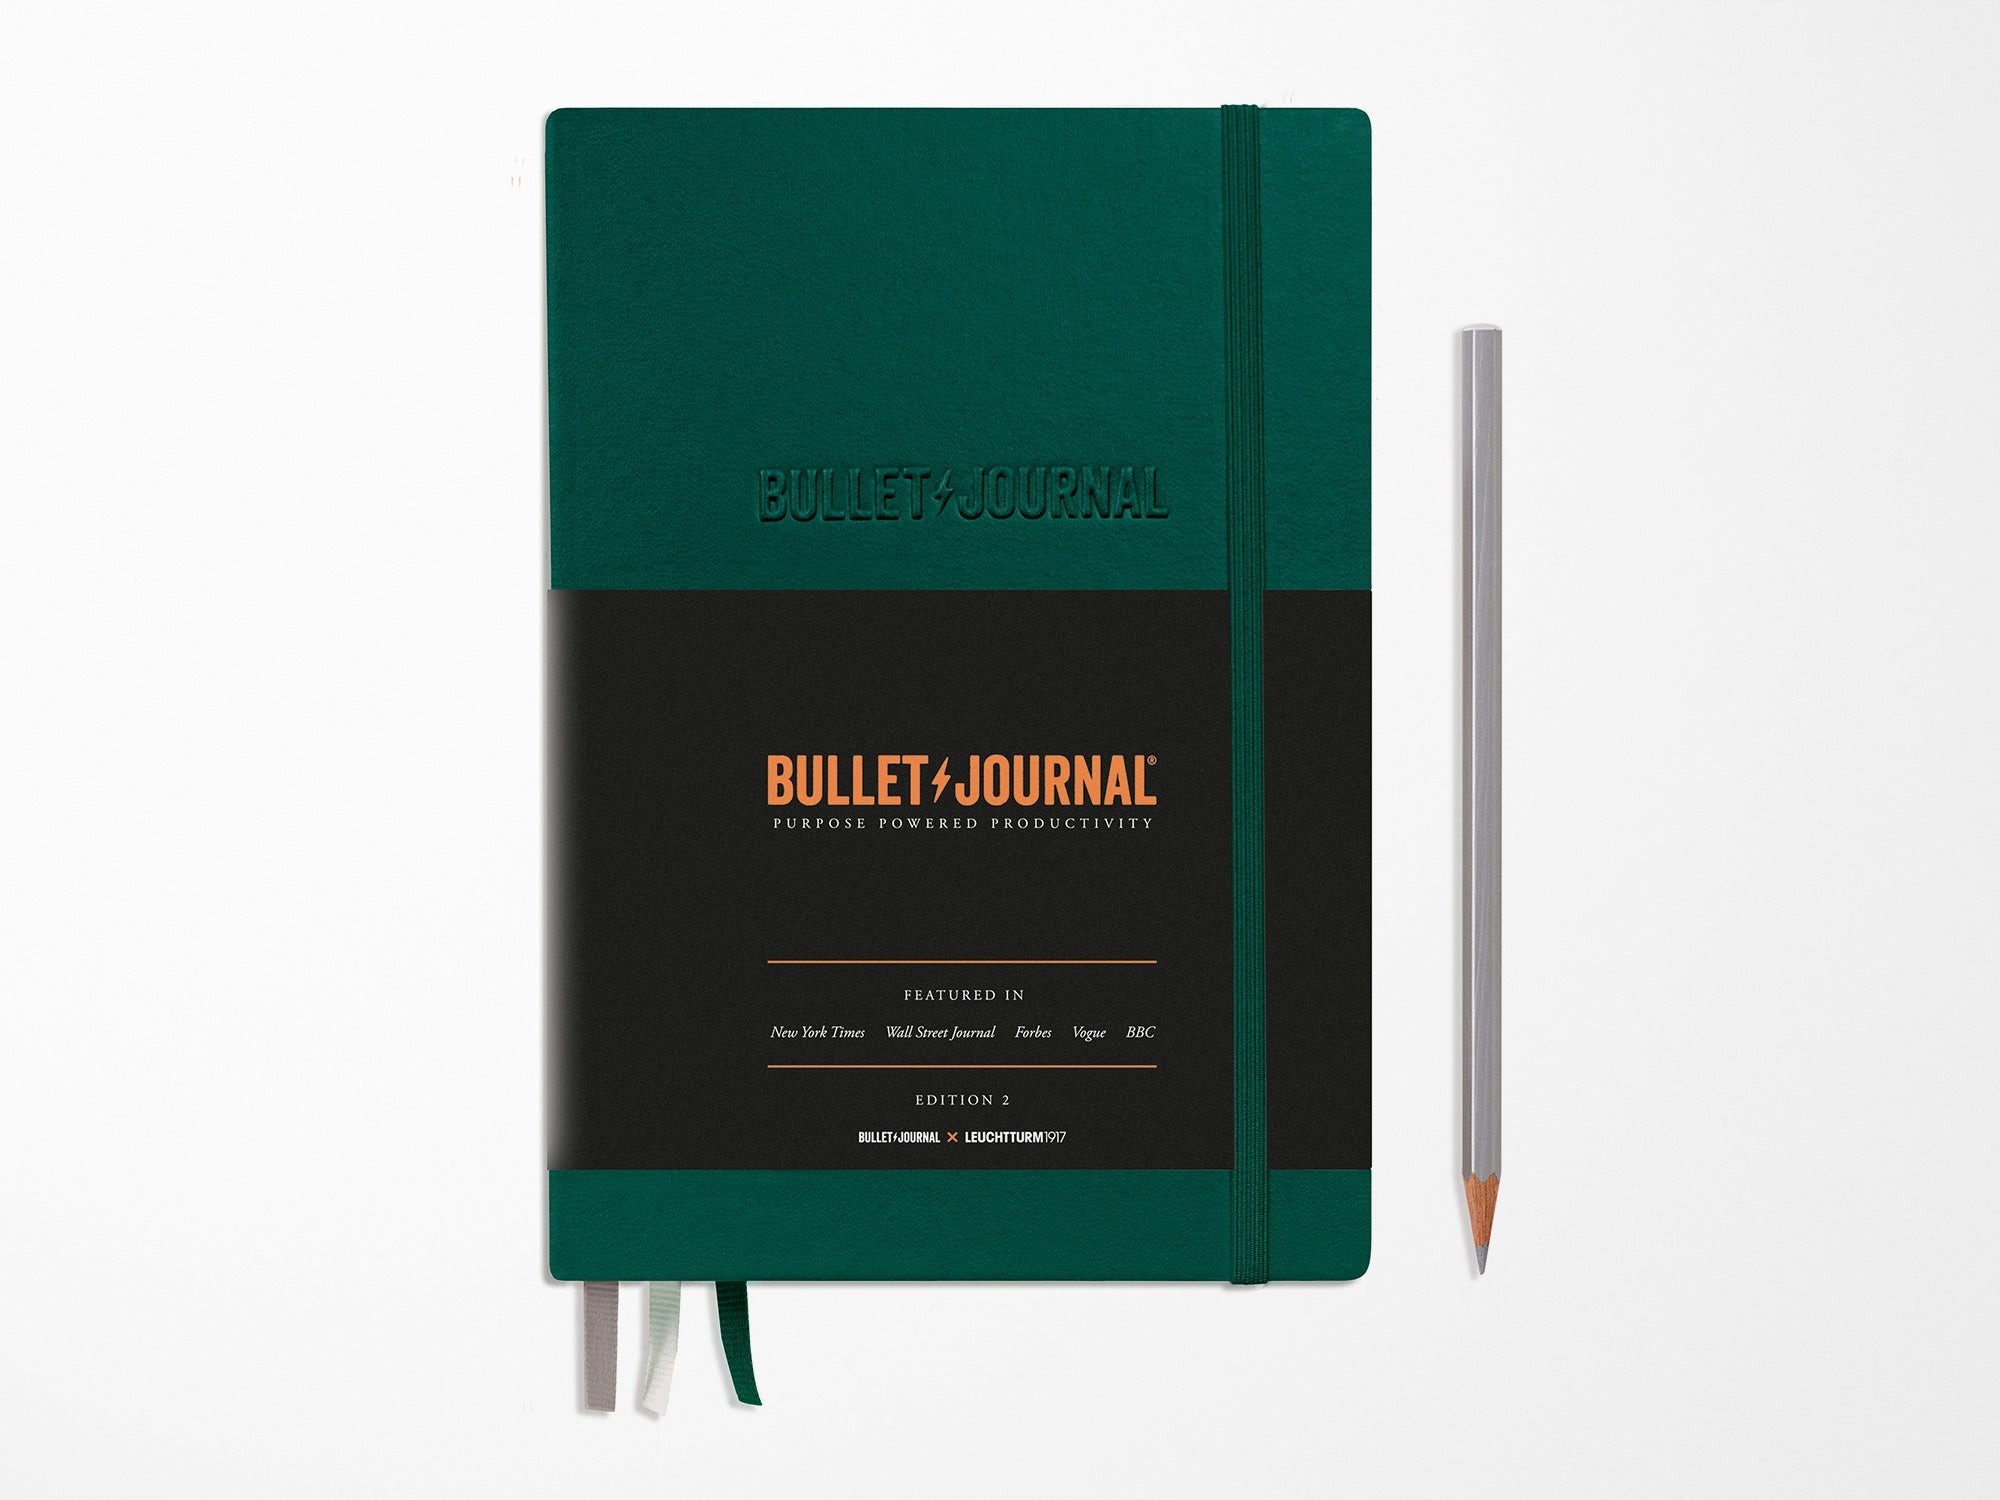 Leuchtturm1917 Medium A5 Notebook - Ideal Bullet Journal - Choose